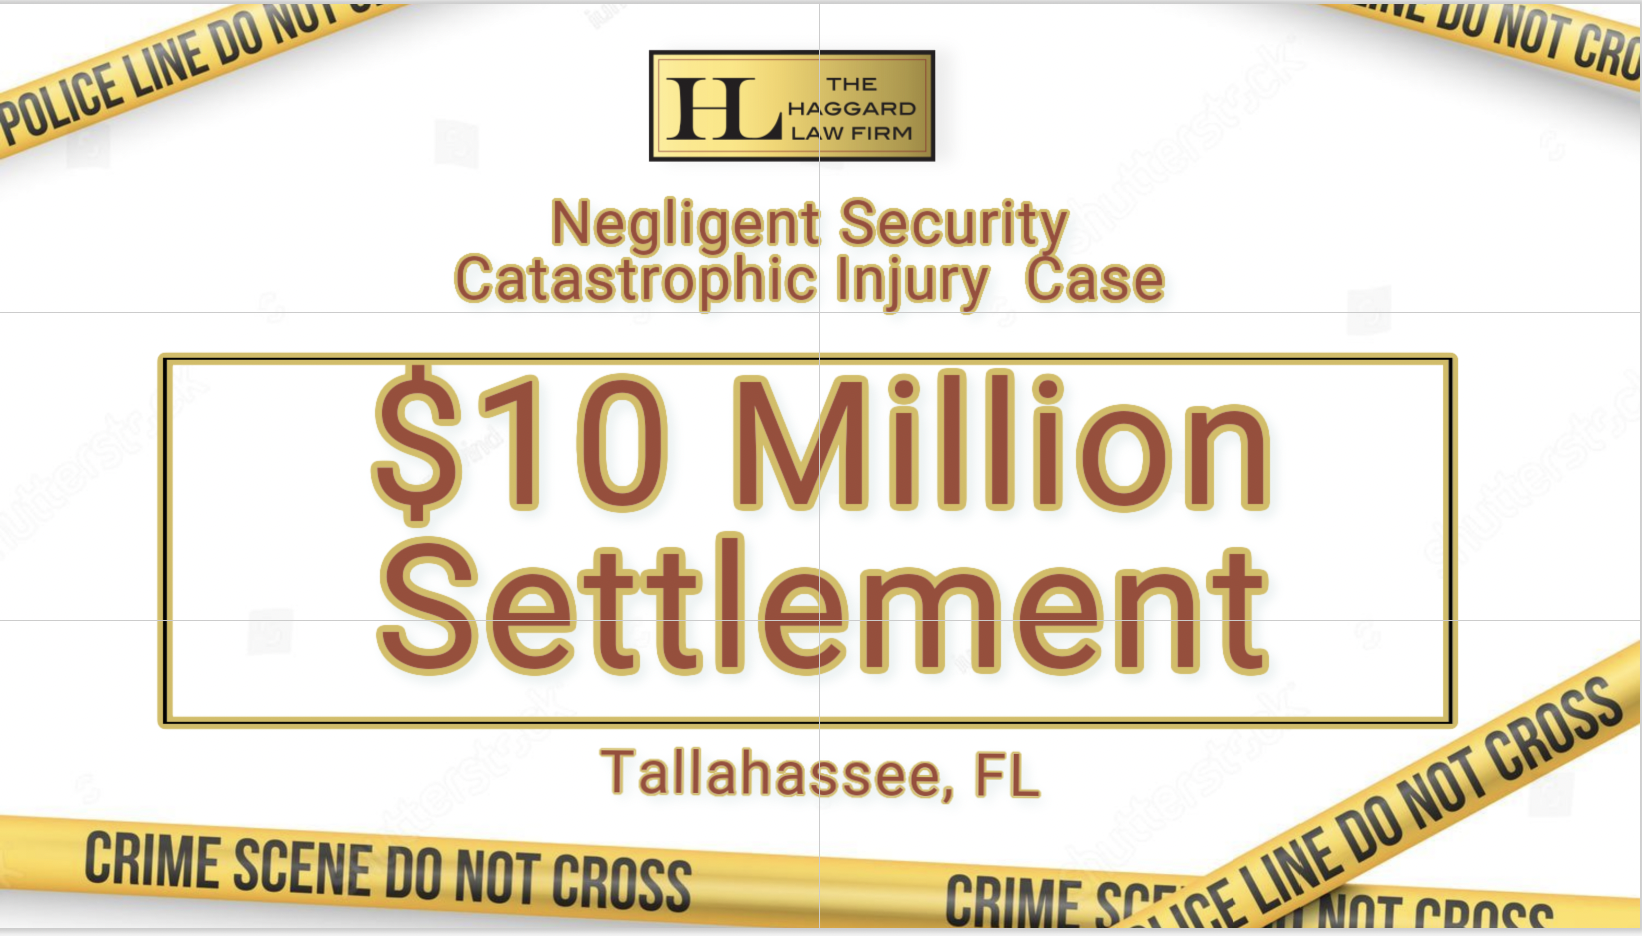 $10 Million Negligent Security Settlement